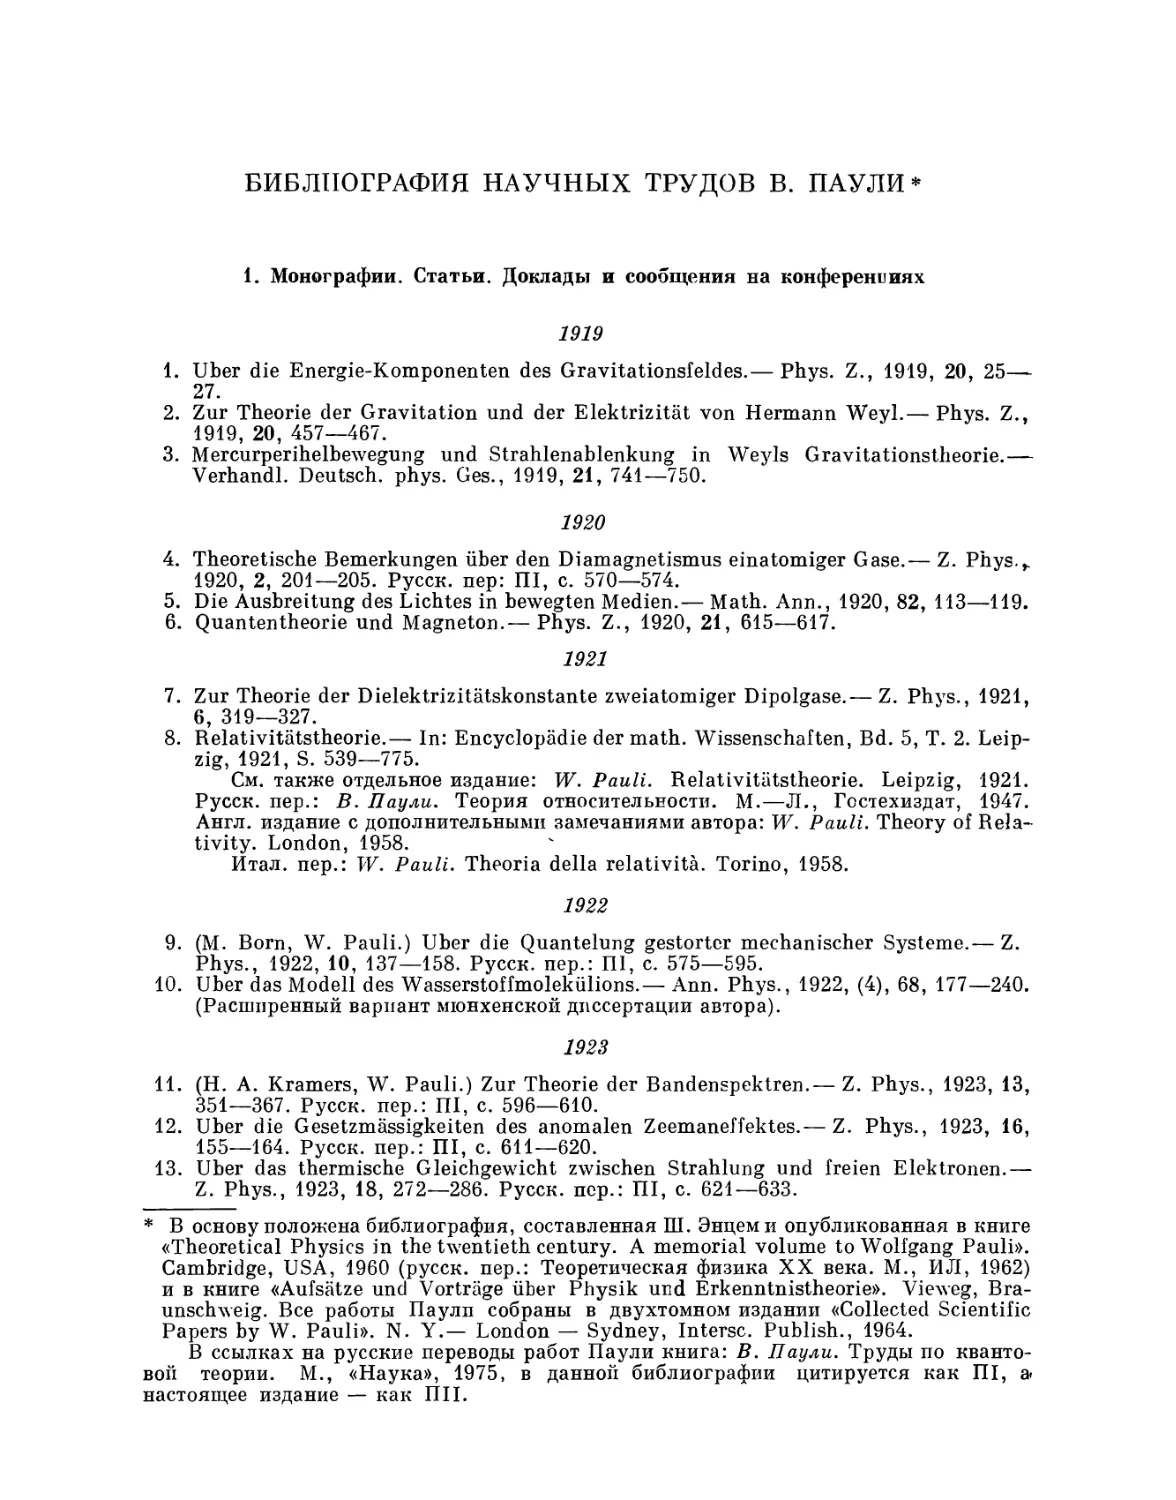 Библиография научных трудов В. Паули